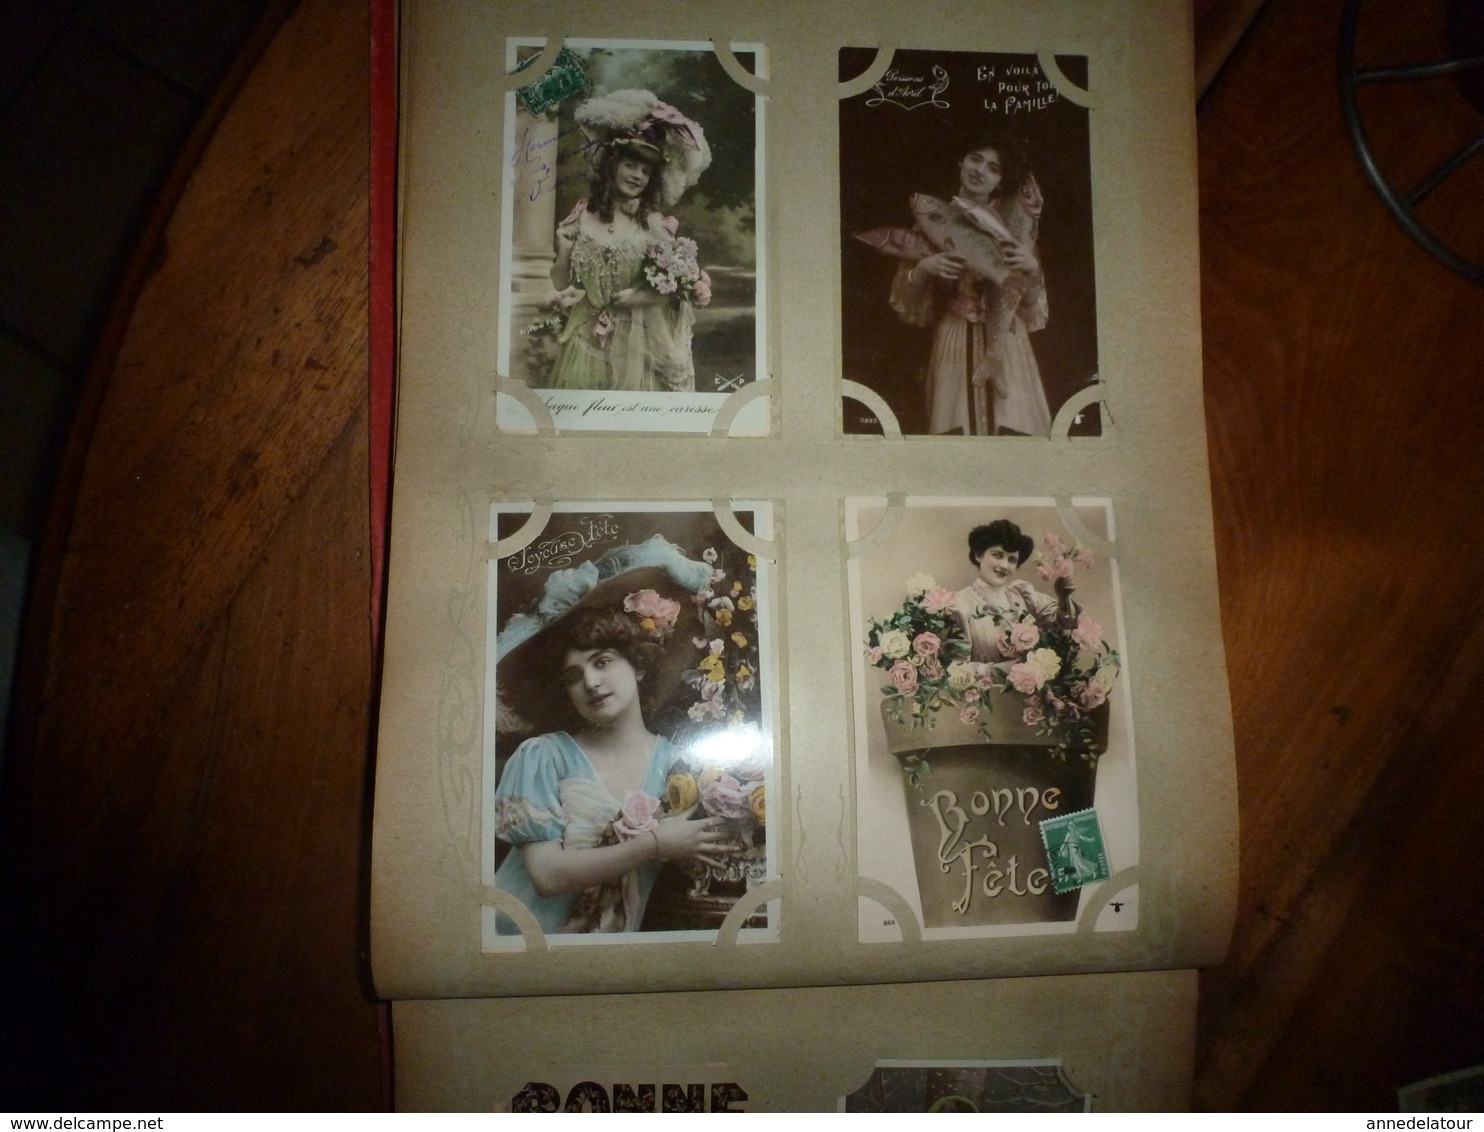 CARTES POSTALES  dans un album  contenant  308 CPA Vers 1900 (En auto; Historiettes,Femmes,Fillettes,Couples;etc)